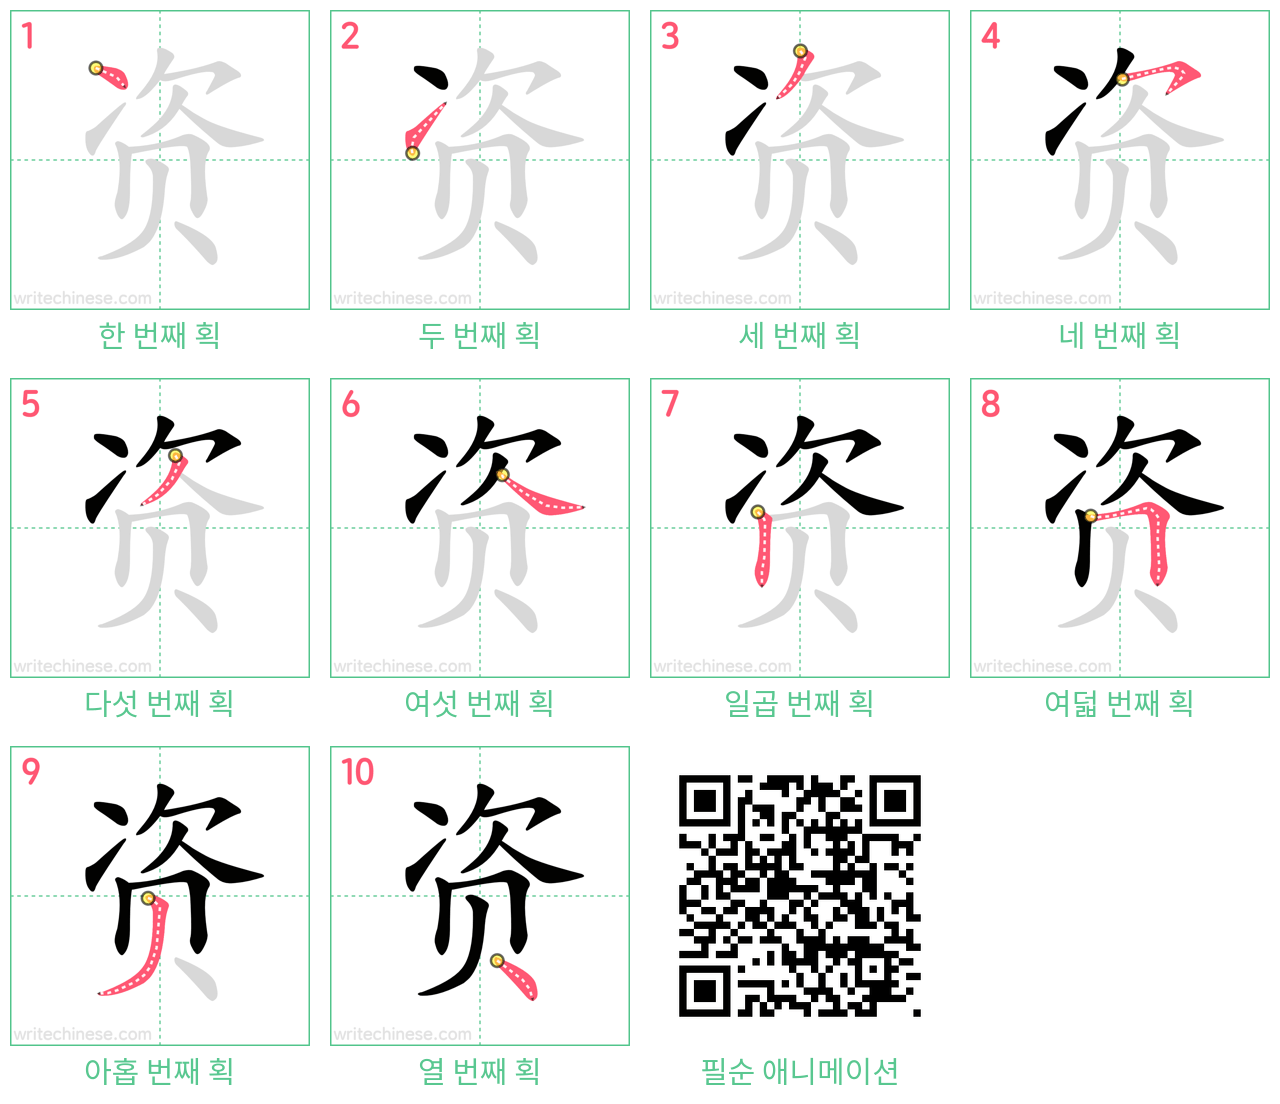 资 step-by-step stroke order diagrams